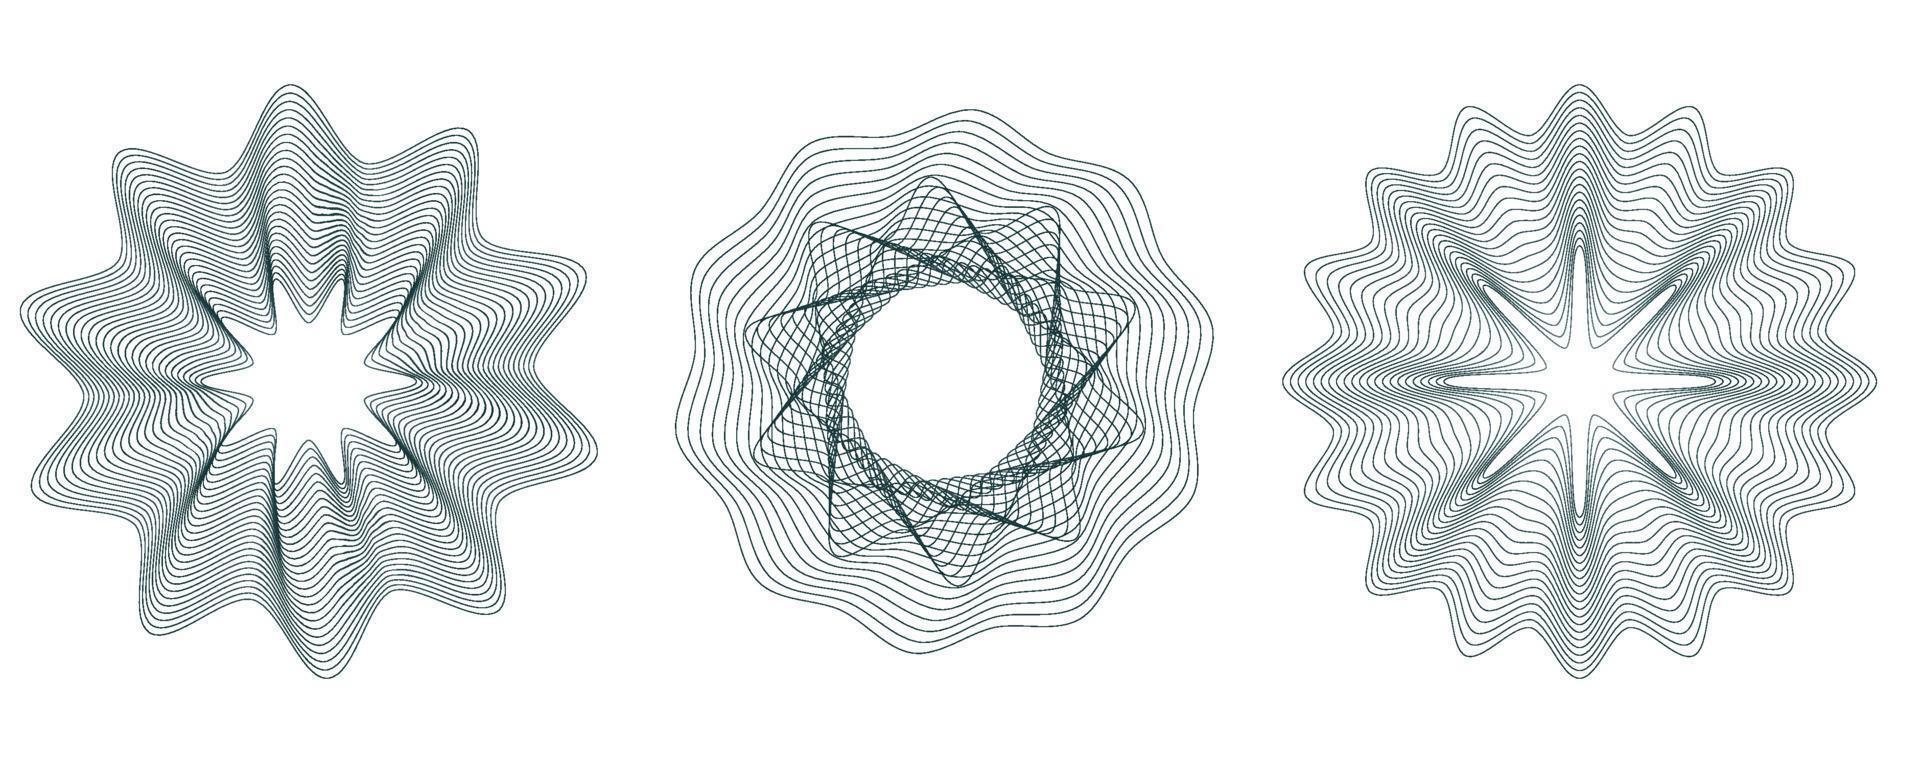 toekomstige morphing lijnen ingesteld. abstract vector achtergronden instellen met guilloche. vector illustratie